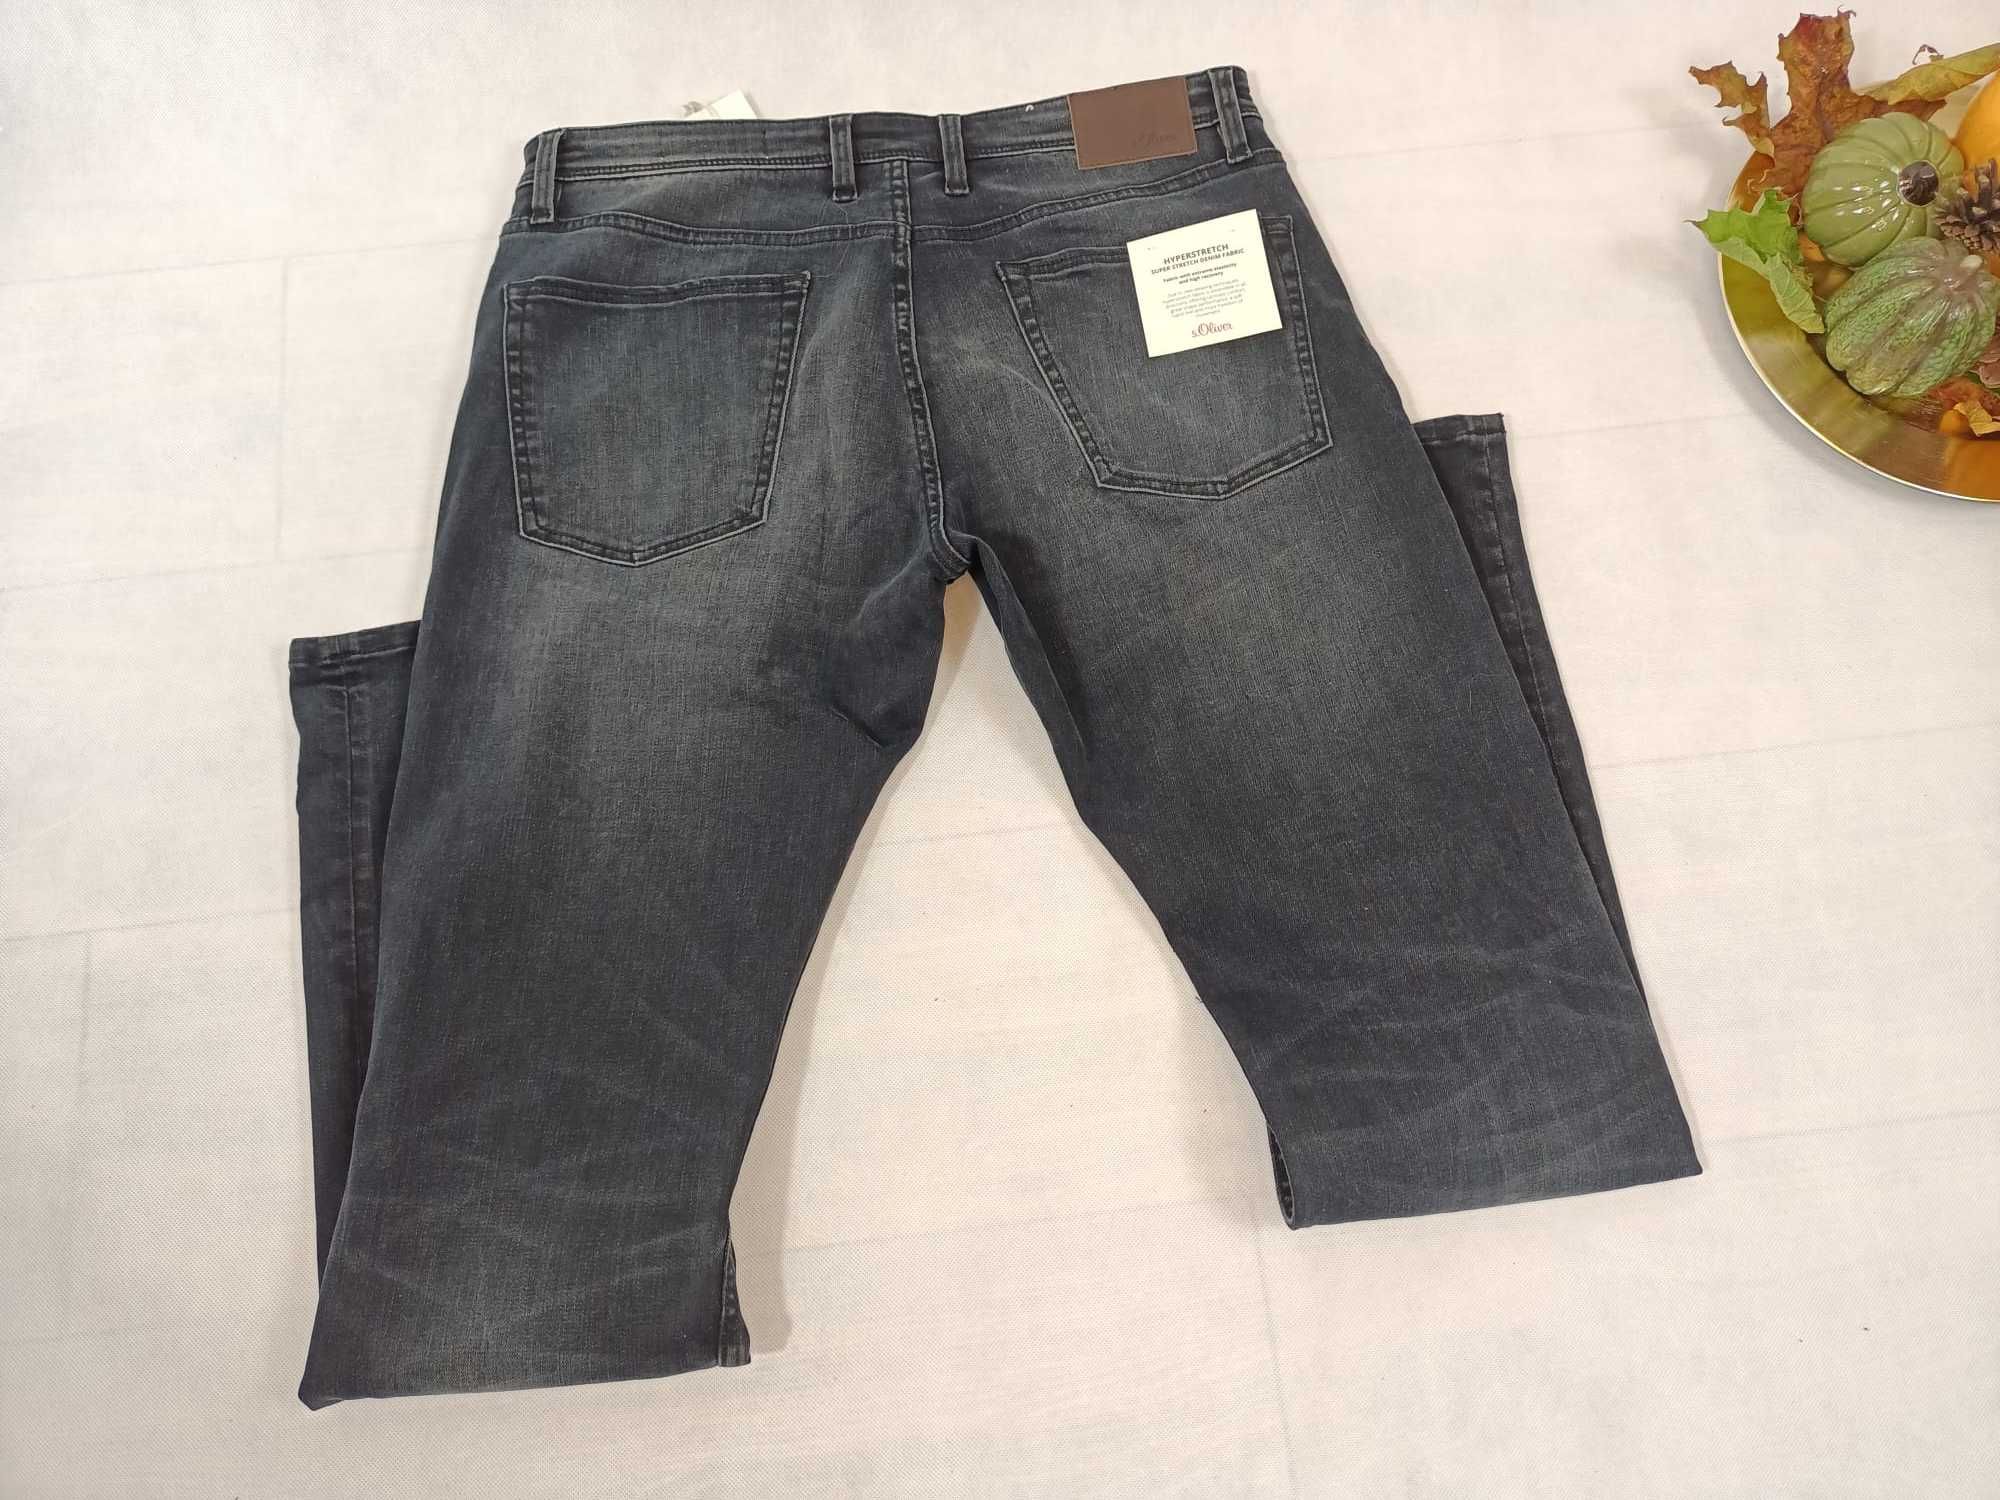 jeans spodnie męskie s.olivier 33/34 nowe metki